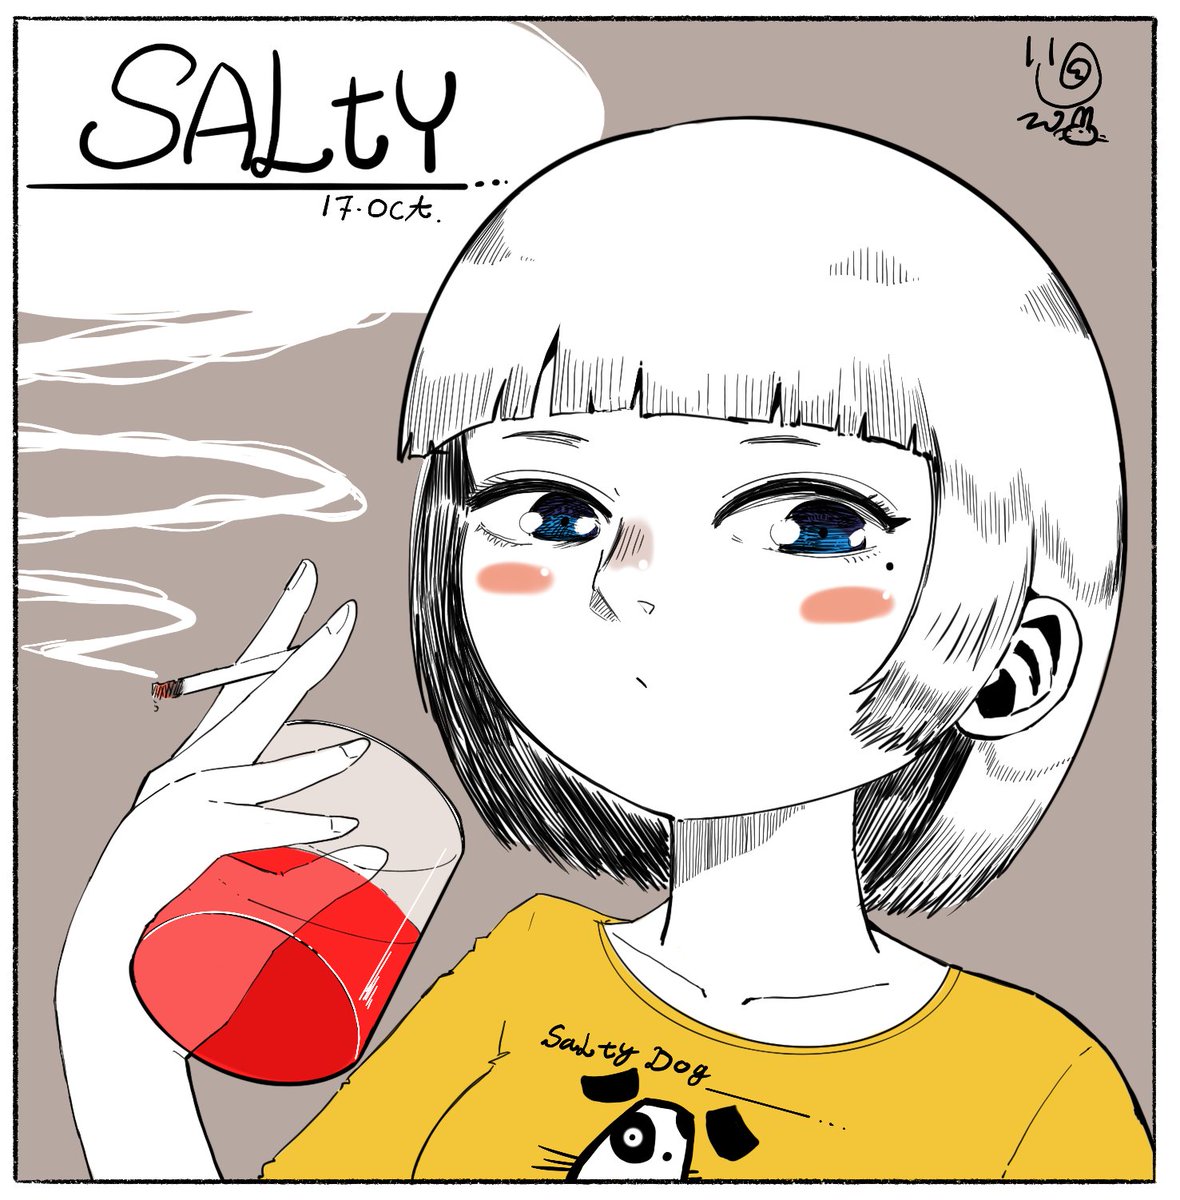 #インクトーバー 
#inktober2022 
Oct 17th Salty
Red "Salty"Dog
#絵描きさんと繋がりたい  #art  #artwork 